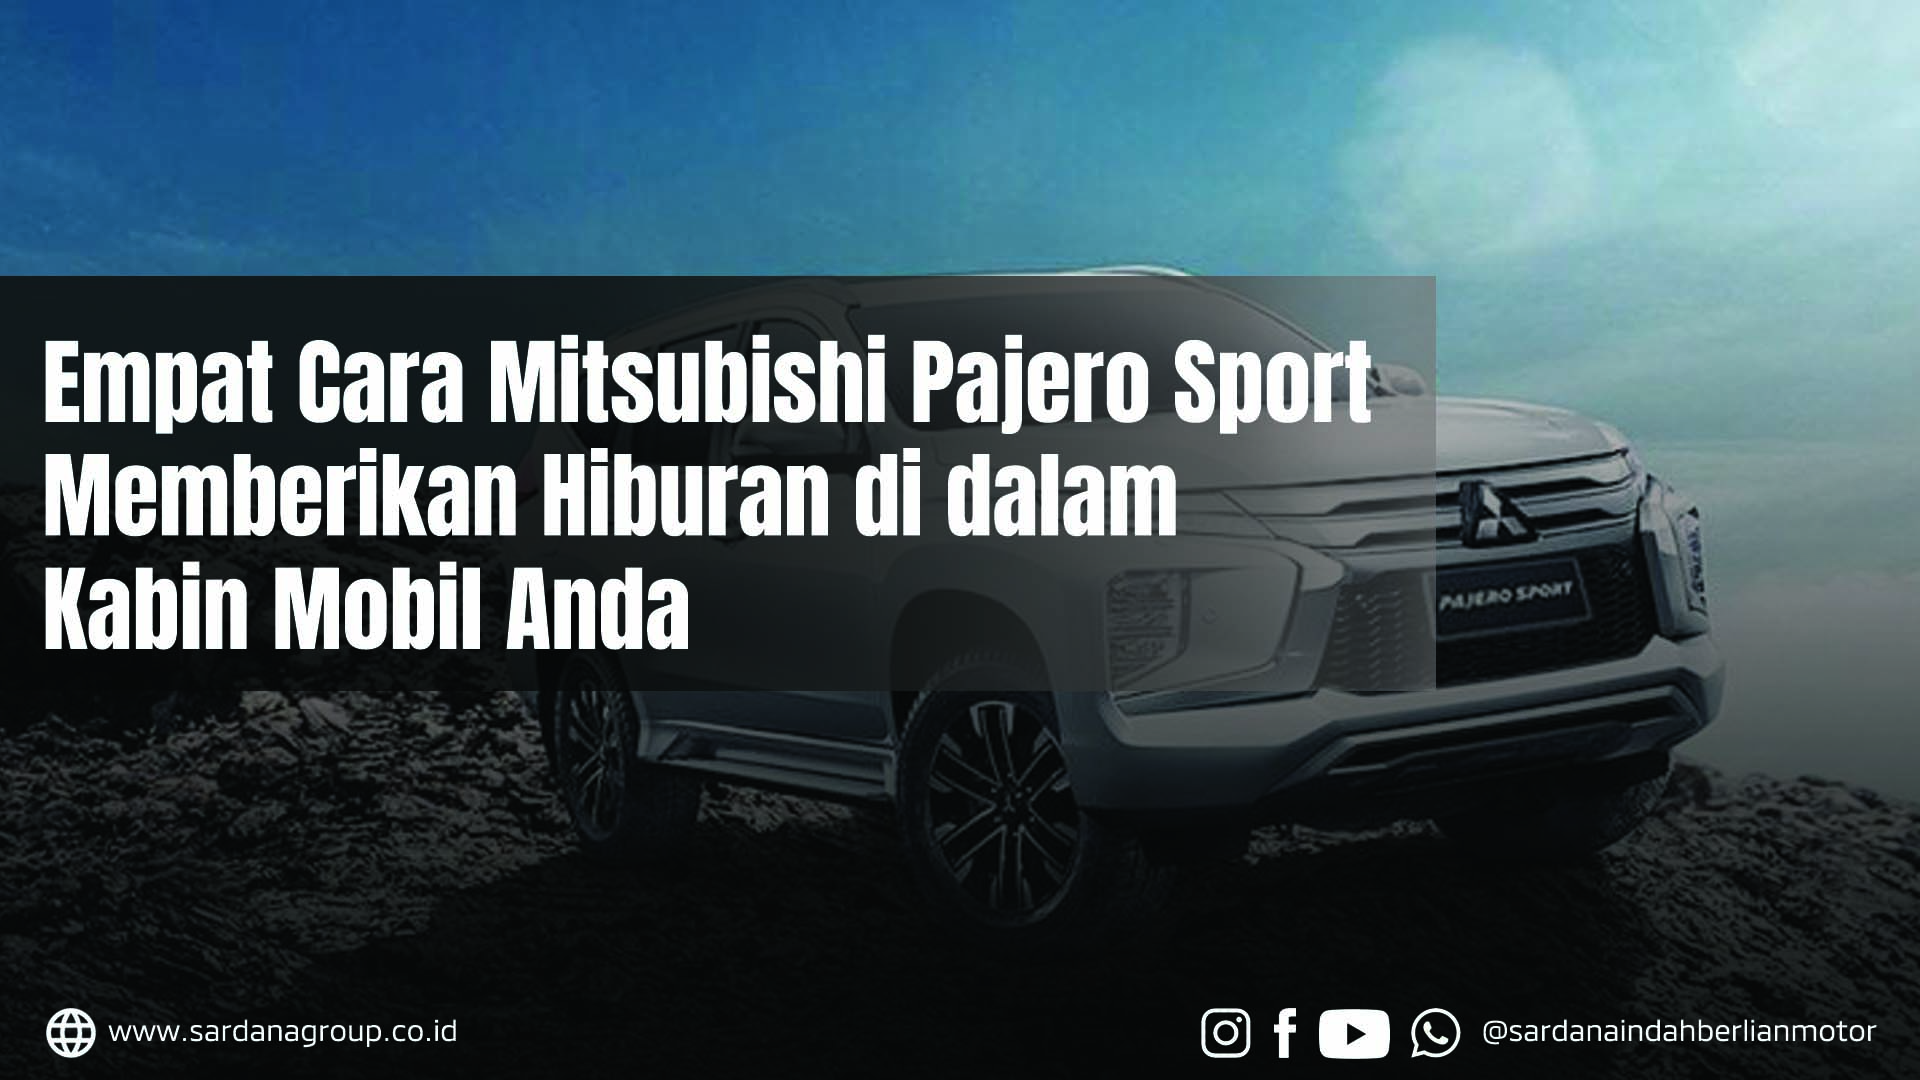 Empat Cara Mitsubishi Pajero Sport Memberikan Hiburan di Dalam Kabin Mobil Anda 